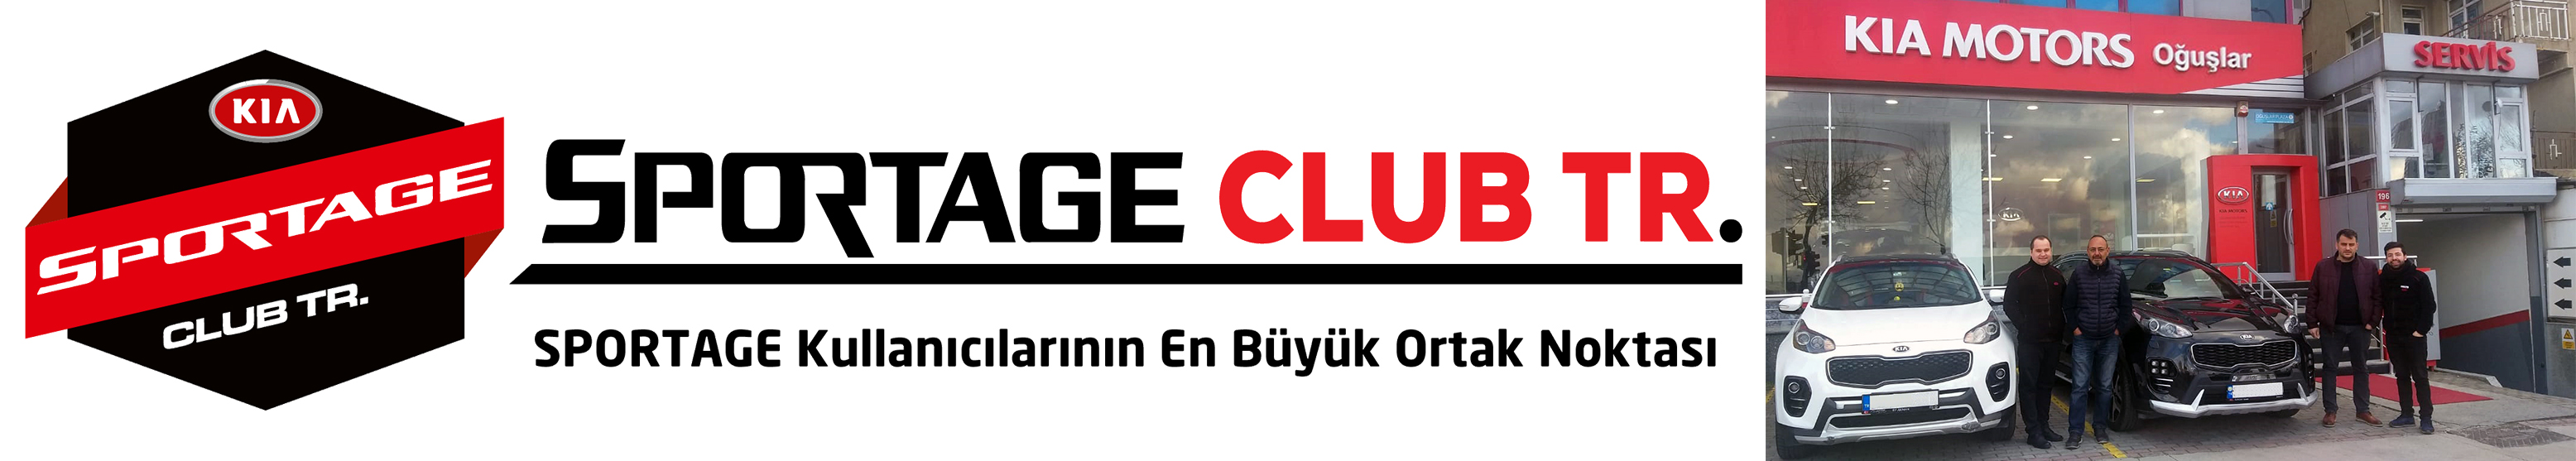 KIA Sportage Club TR'a Hoş geldiniz